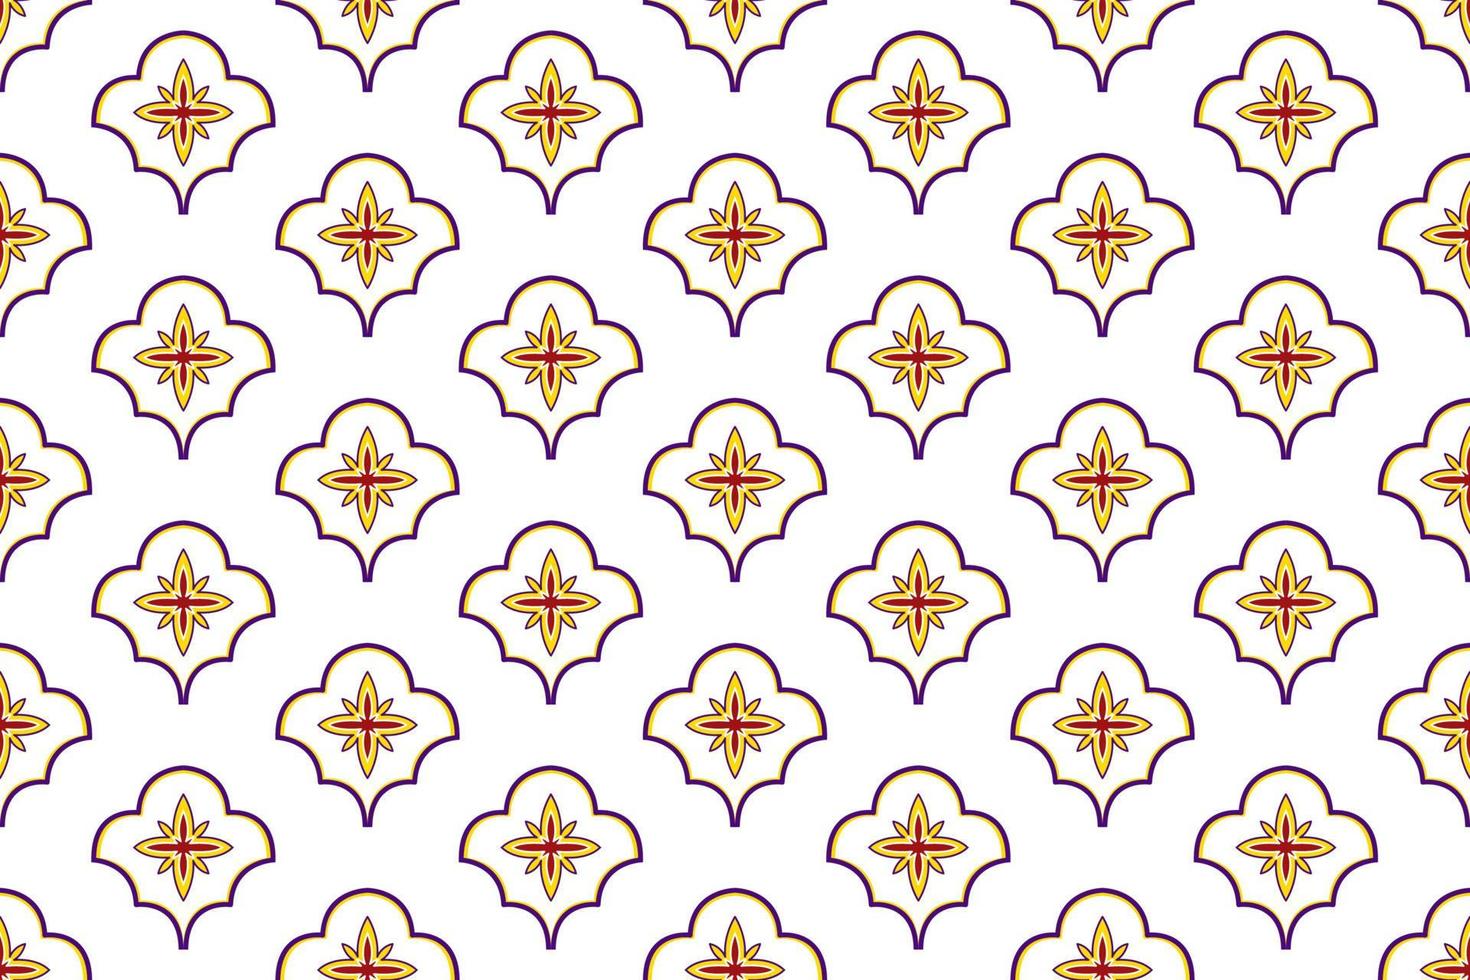 Marokkaans ikat etnisch naadloos patroonontwerp. Azteekse stof tapijt mandala ornament inheemse boho chevron textiel decoratie behang. tribal turkije afrikaanse indische traditionele borduurvector vector